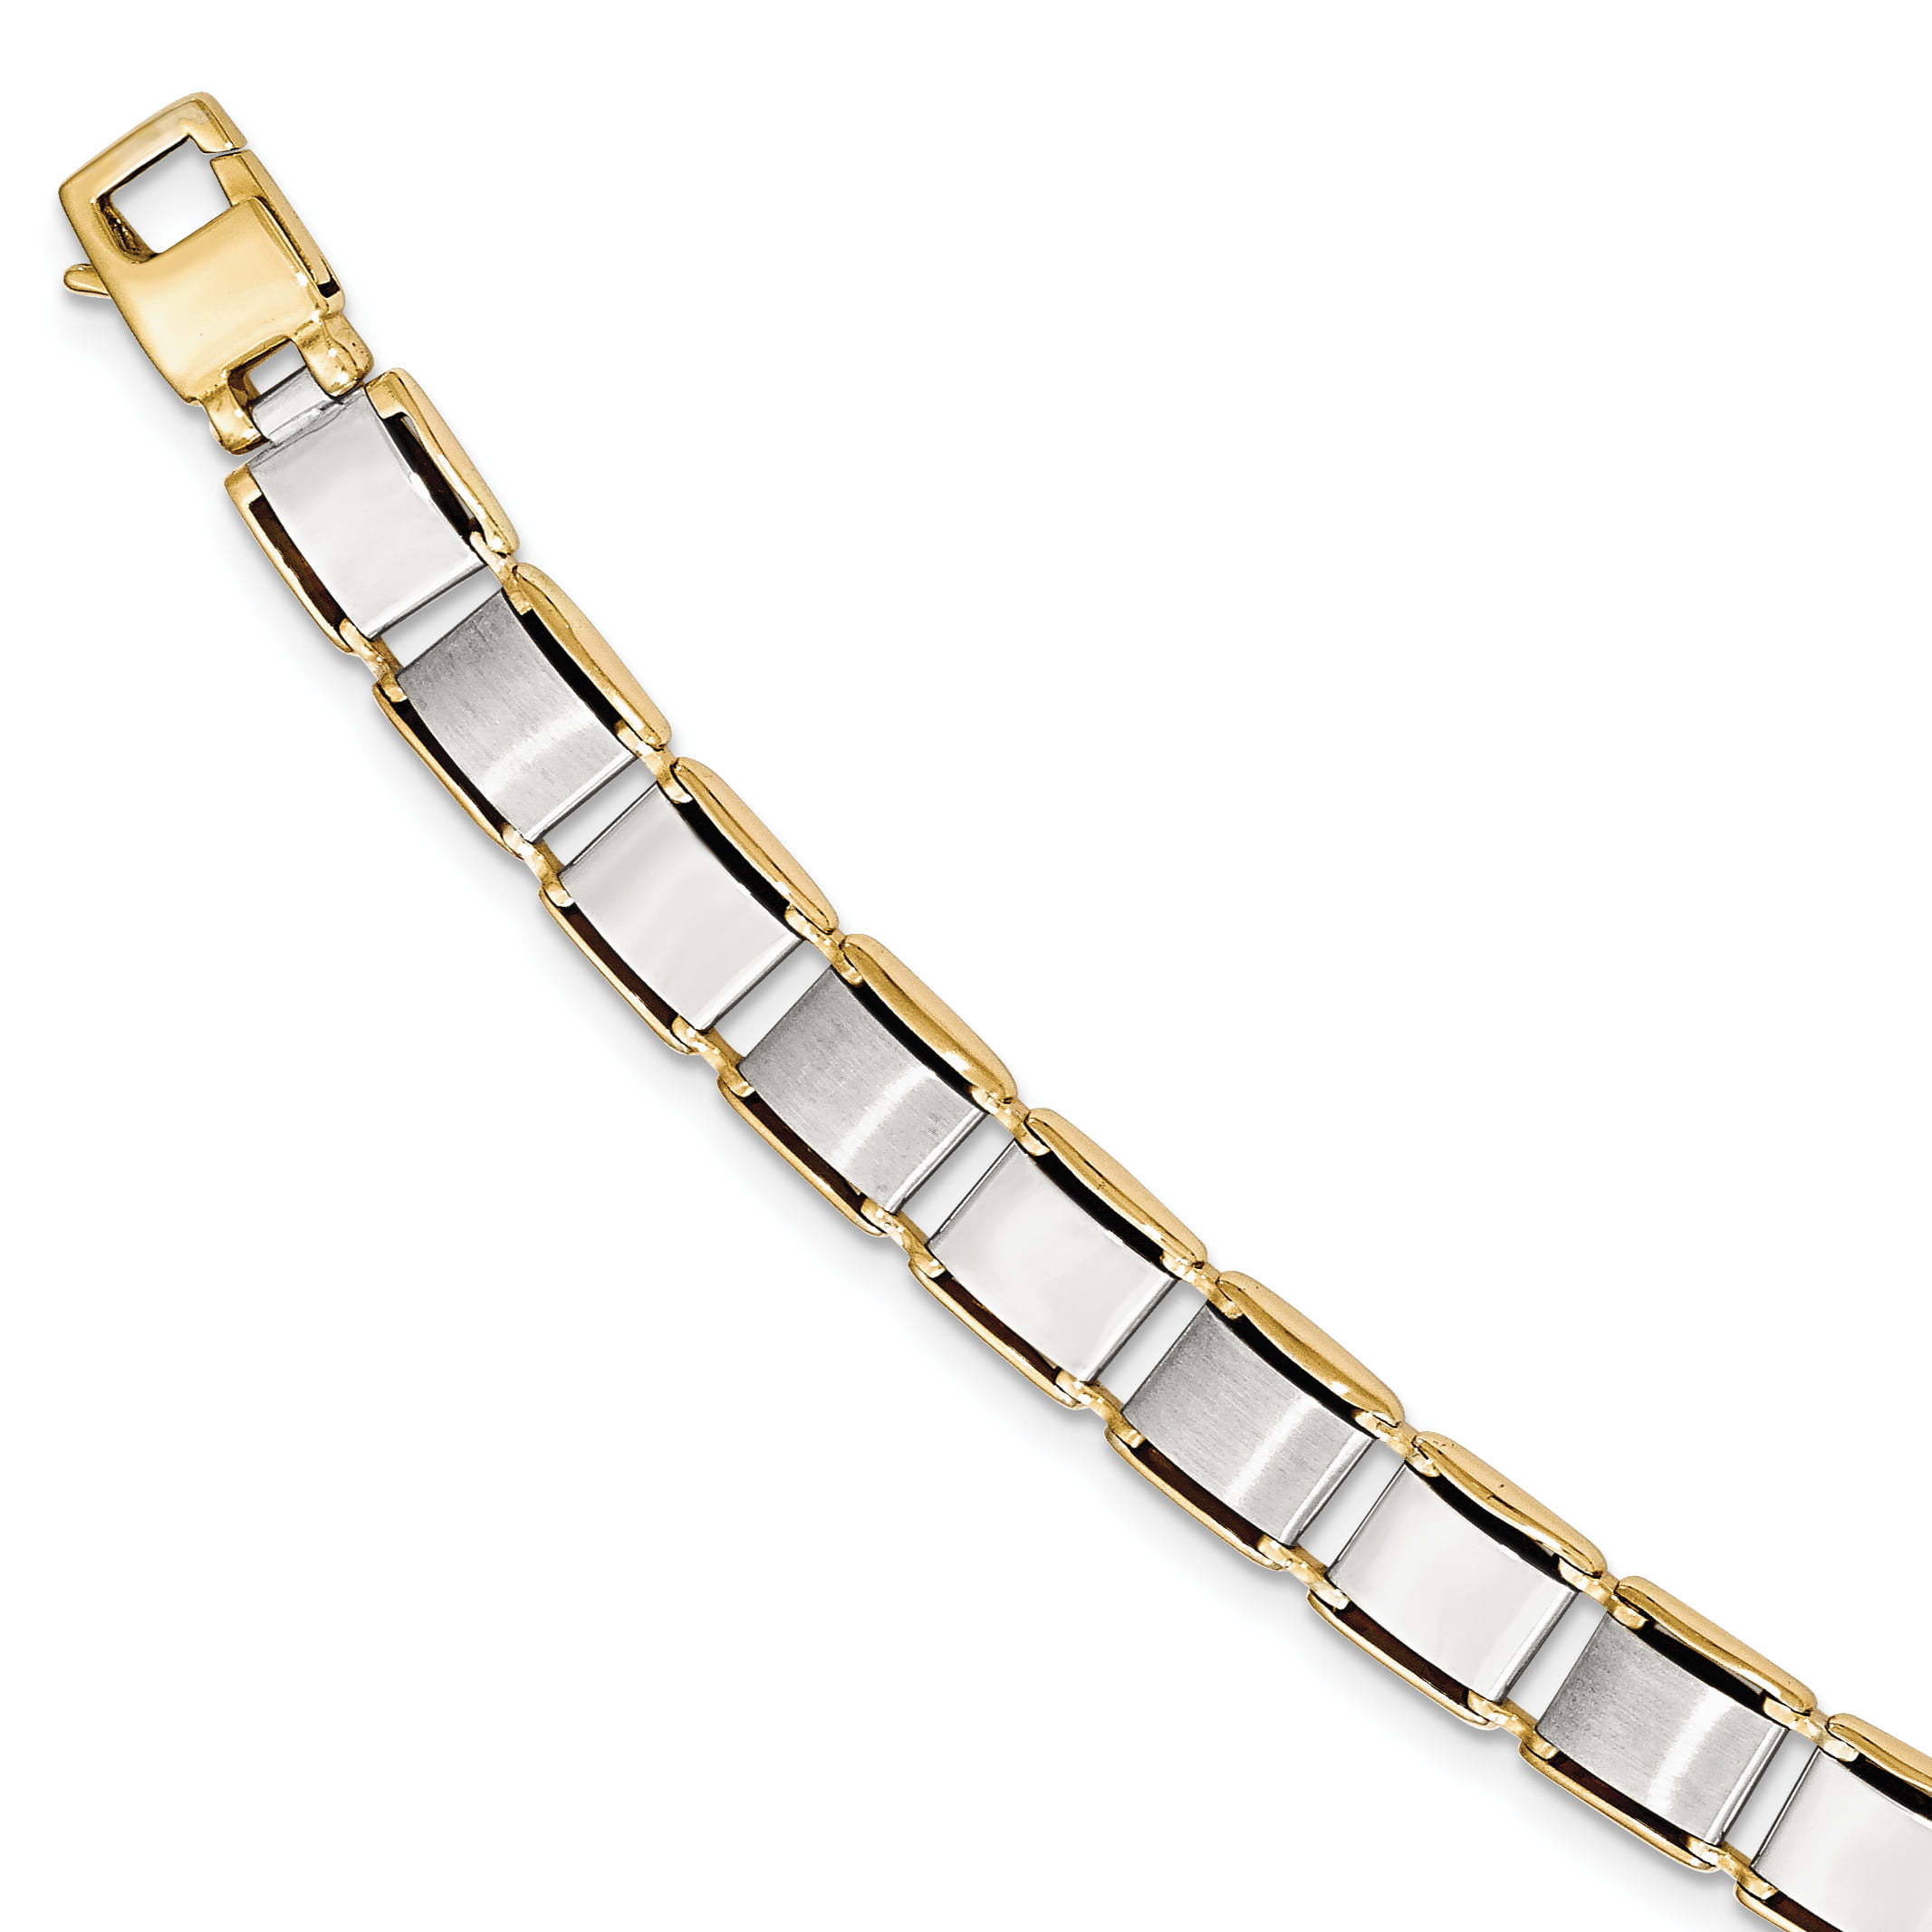 RoseCharm Beautiful Stainless Steel & 18k Gold Foil 8.25in Bracelet 